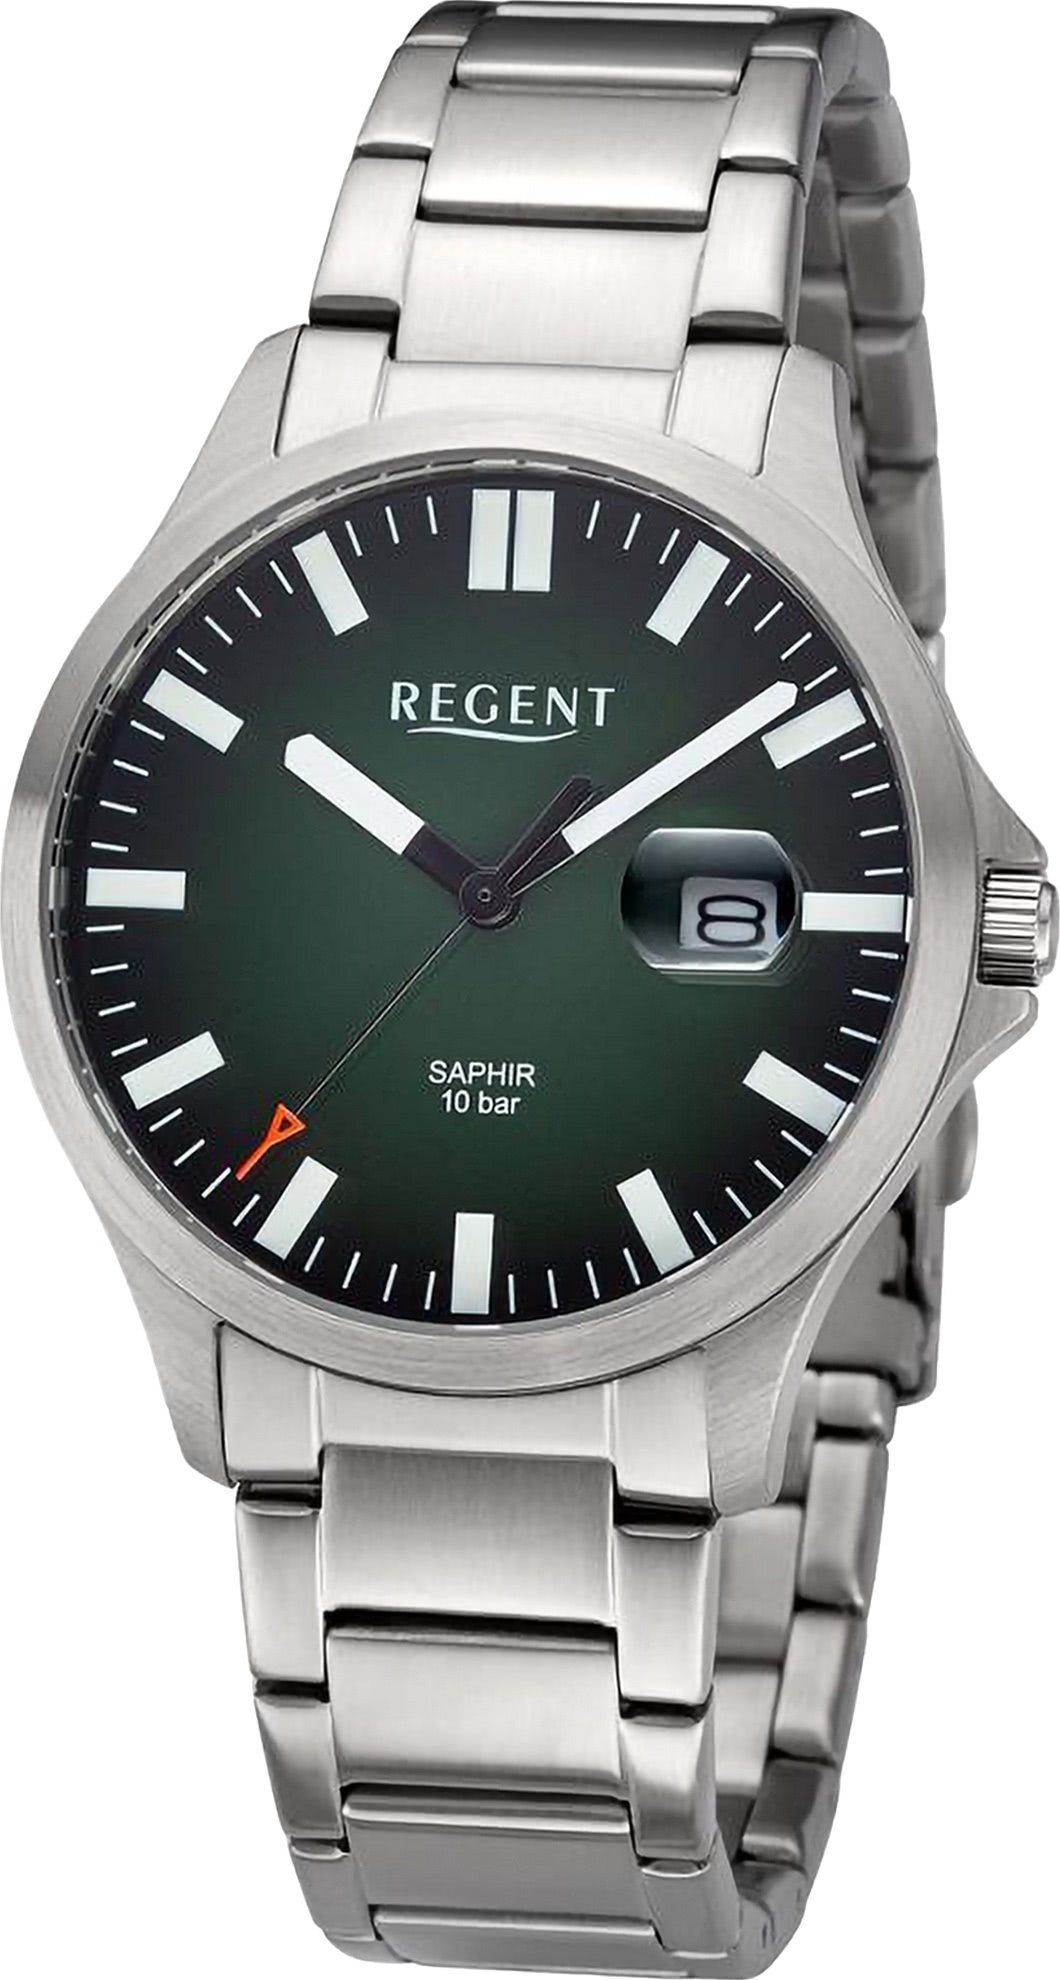 Herren Herren groß Armbanduhr Metallarmband, 40mm), Regent Armbanduhr Analog, Quarzuhr Uhrzeit extra rund, Regent (ca.